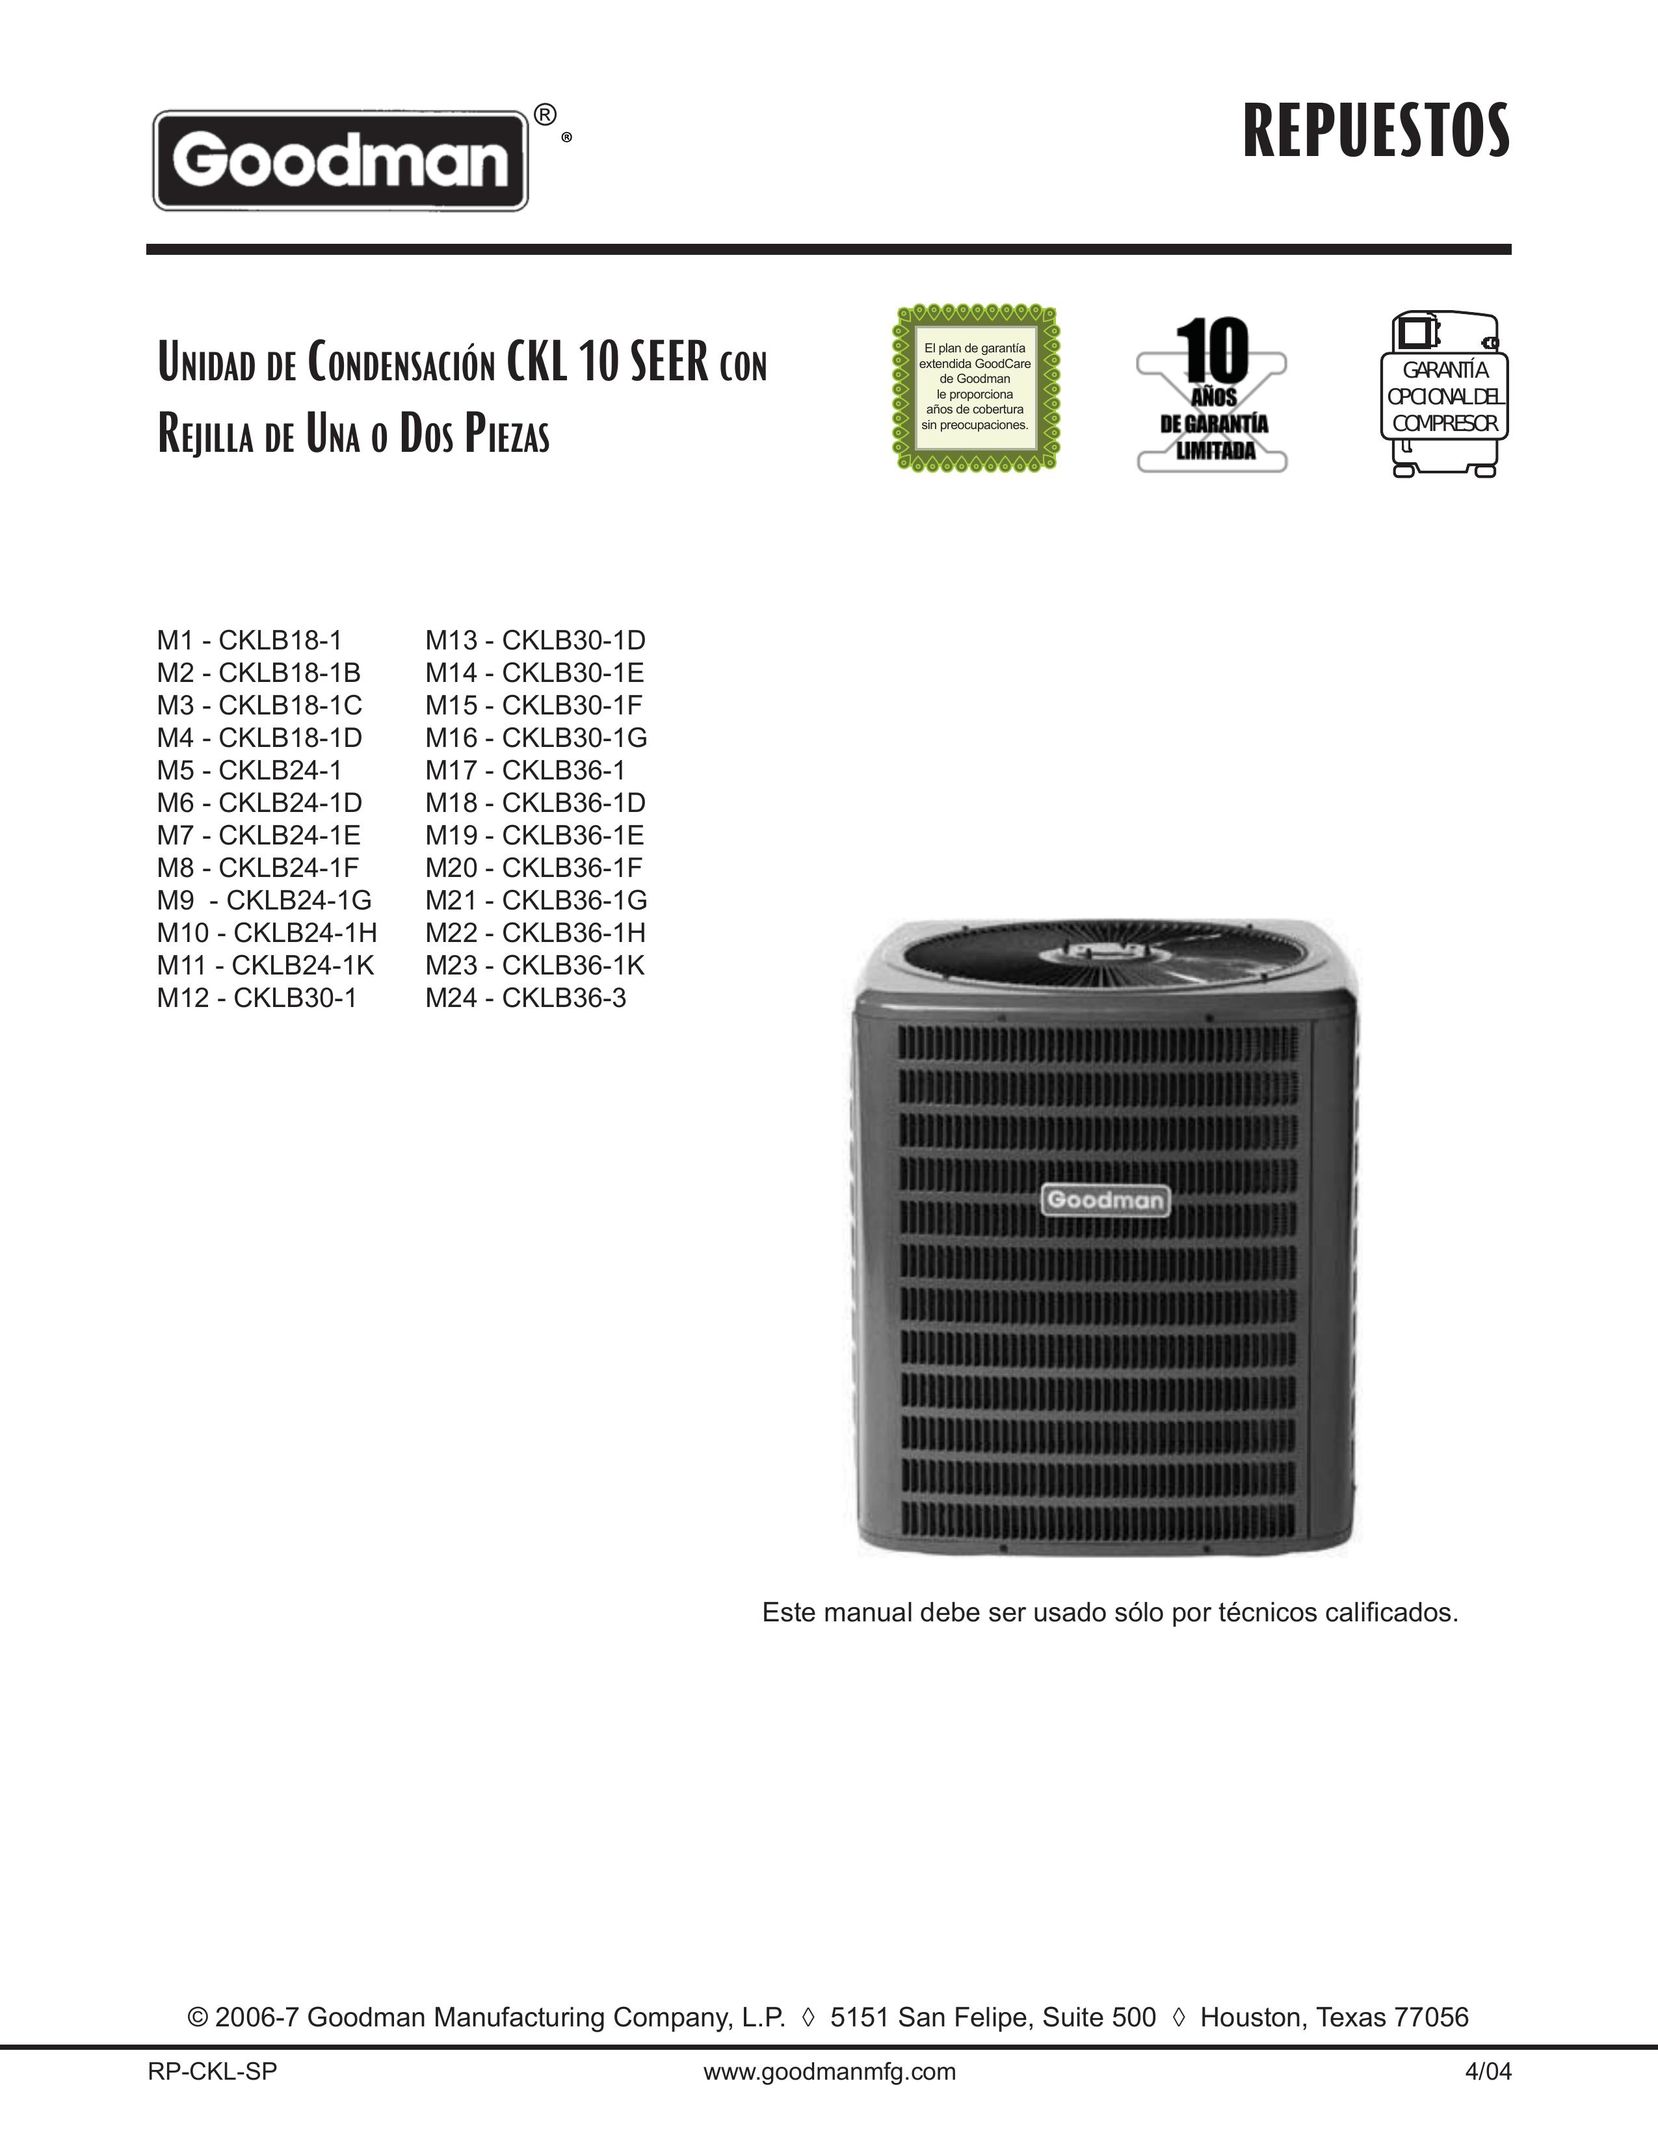 Goodman Mfg CKLB24-1D Air Conditioner User Manual